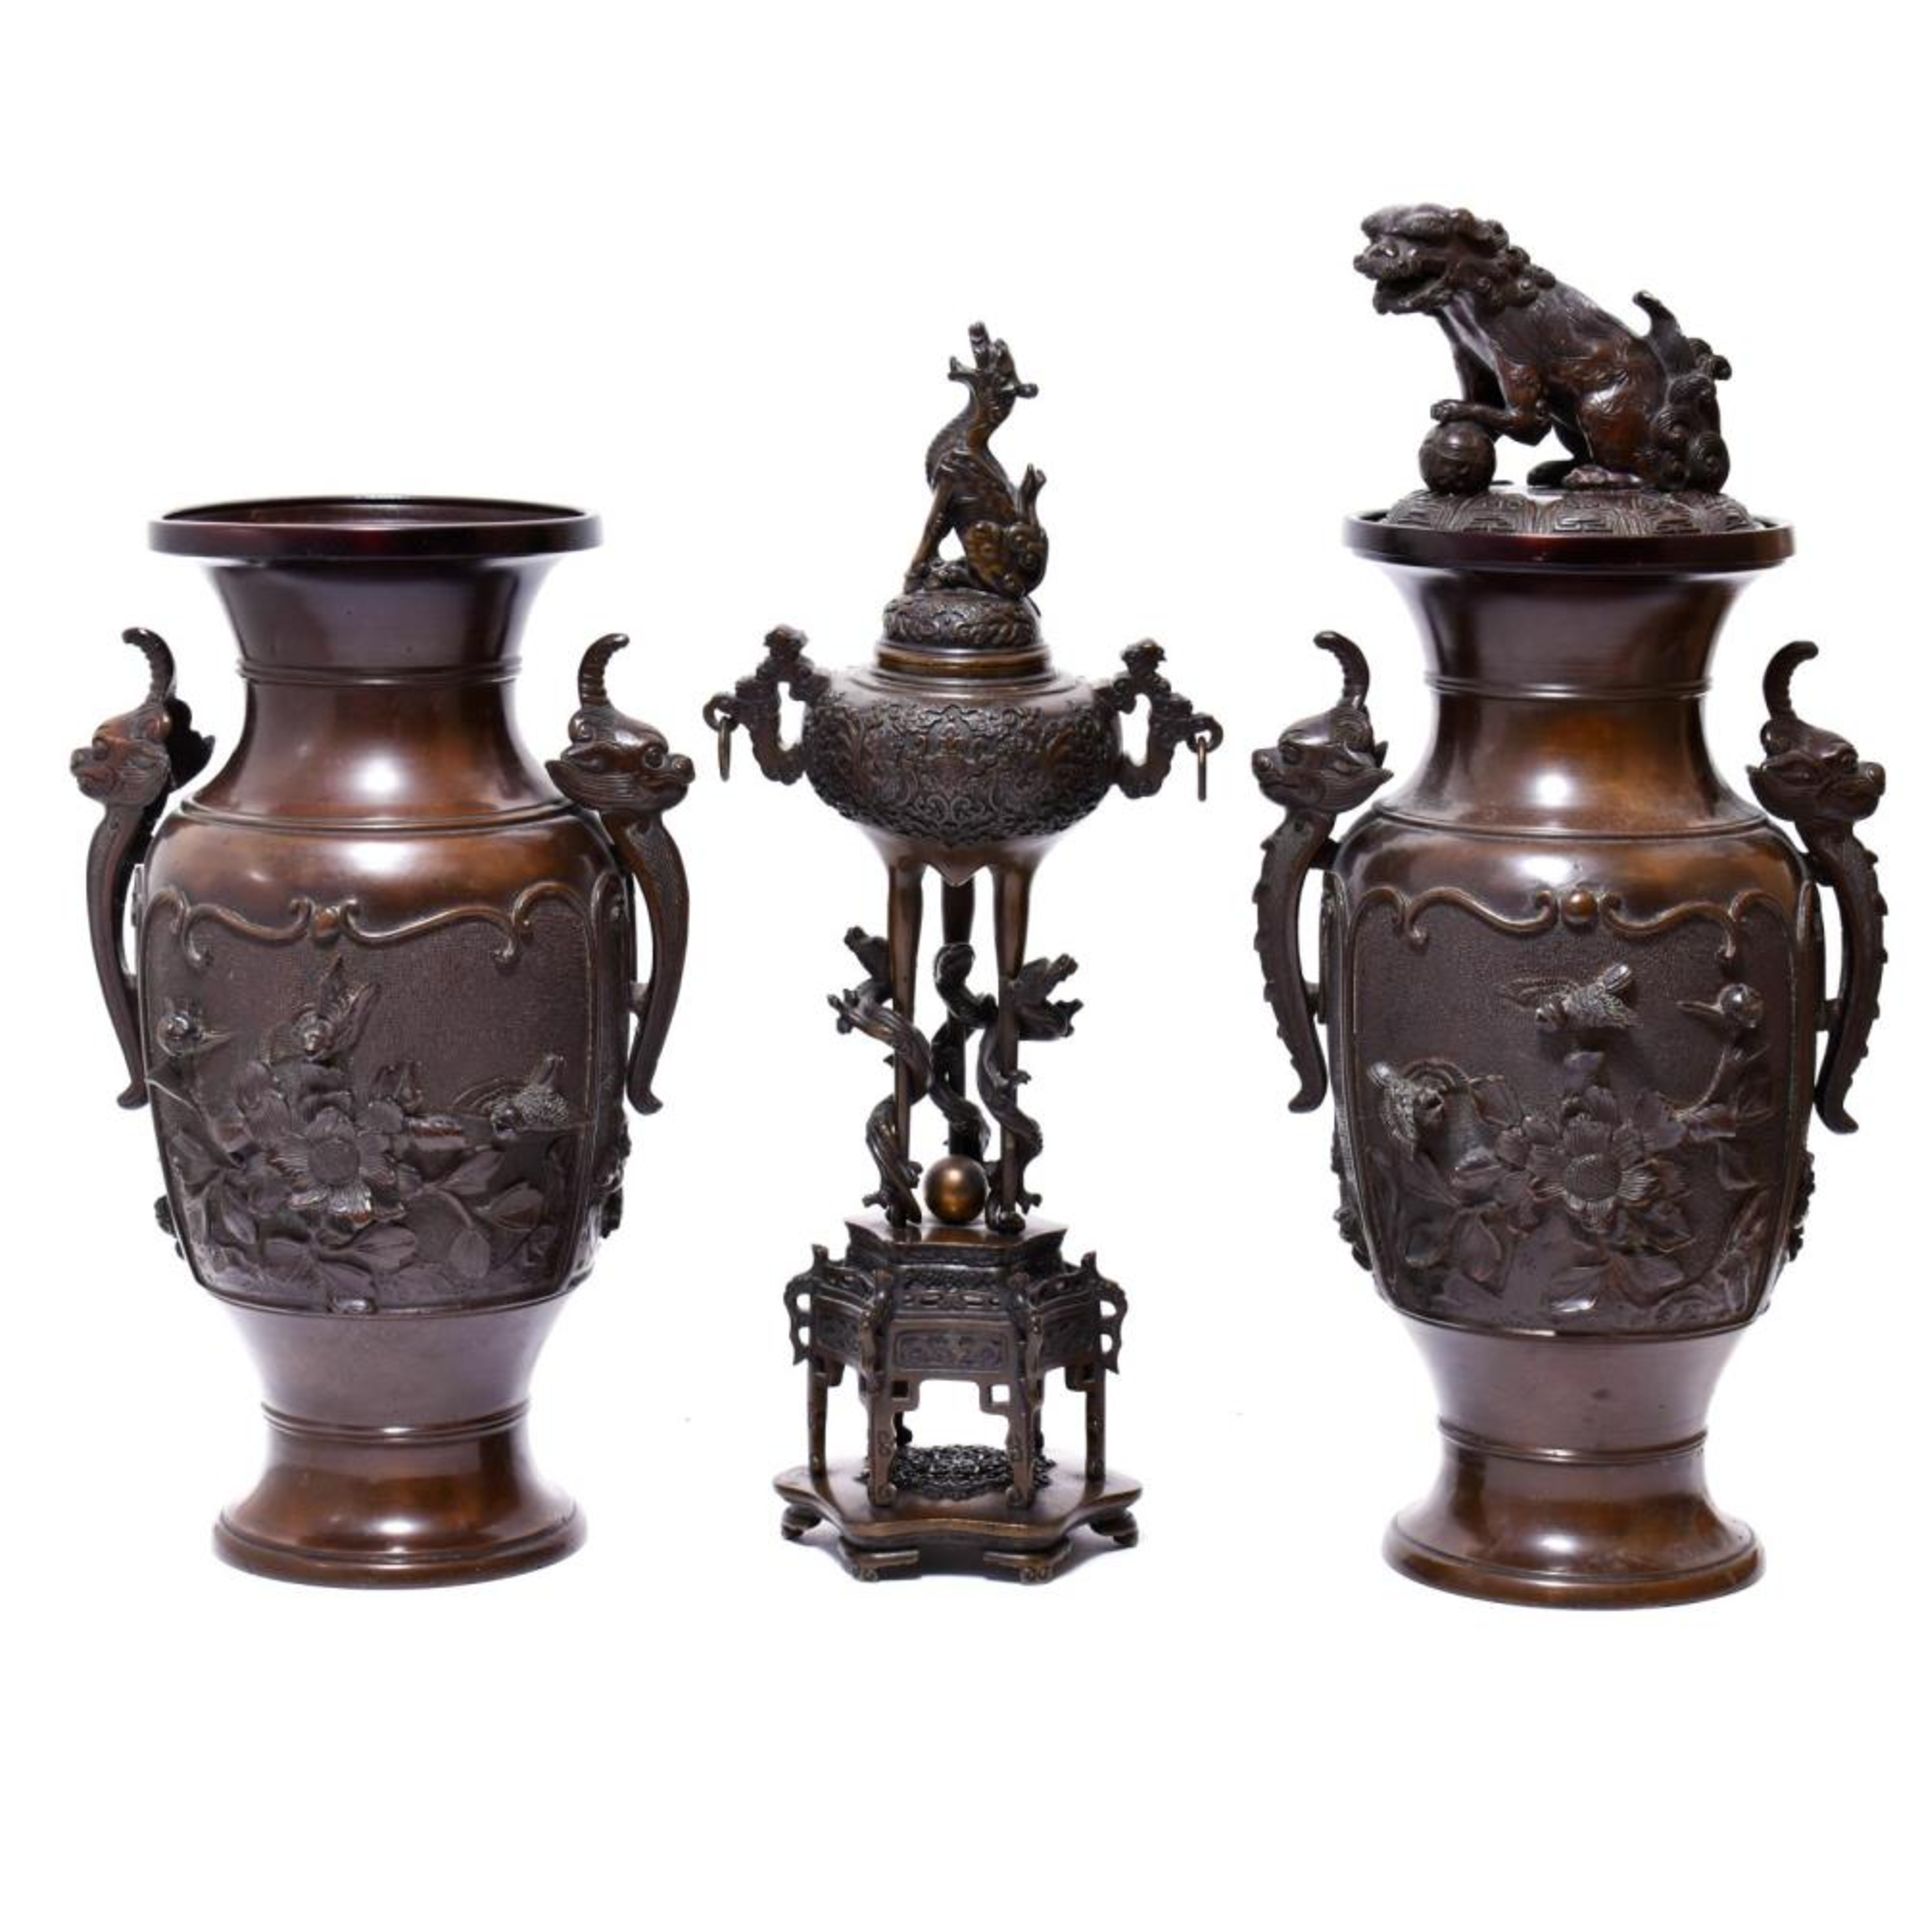 Schalengefäß und zwei Vasen. Bronze, braun patiniert.